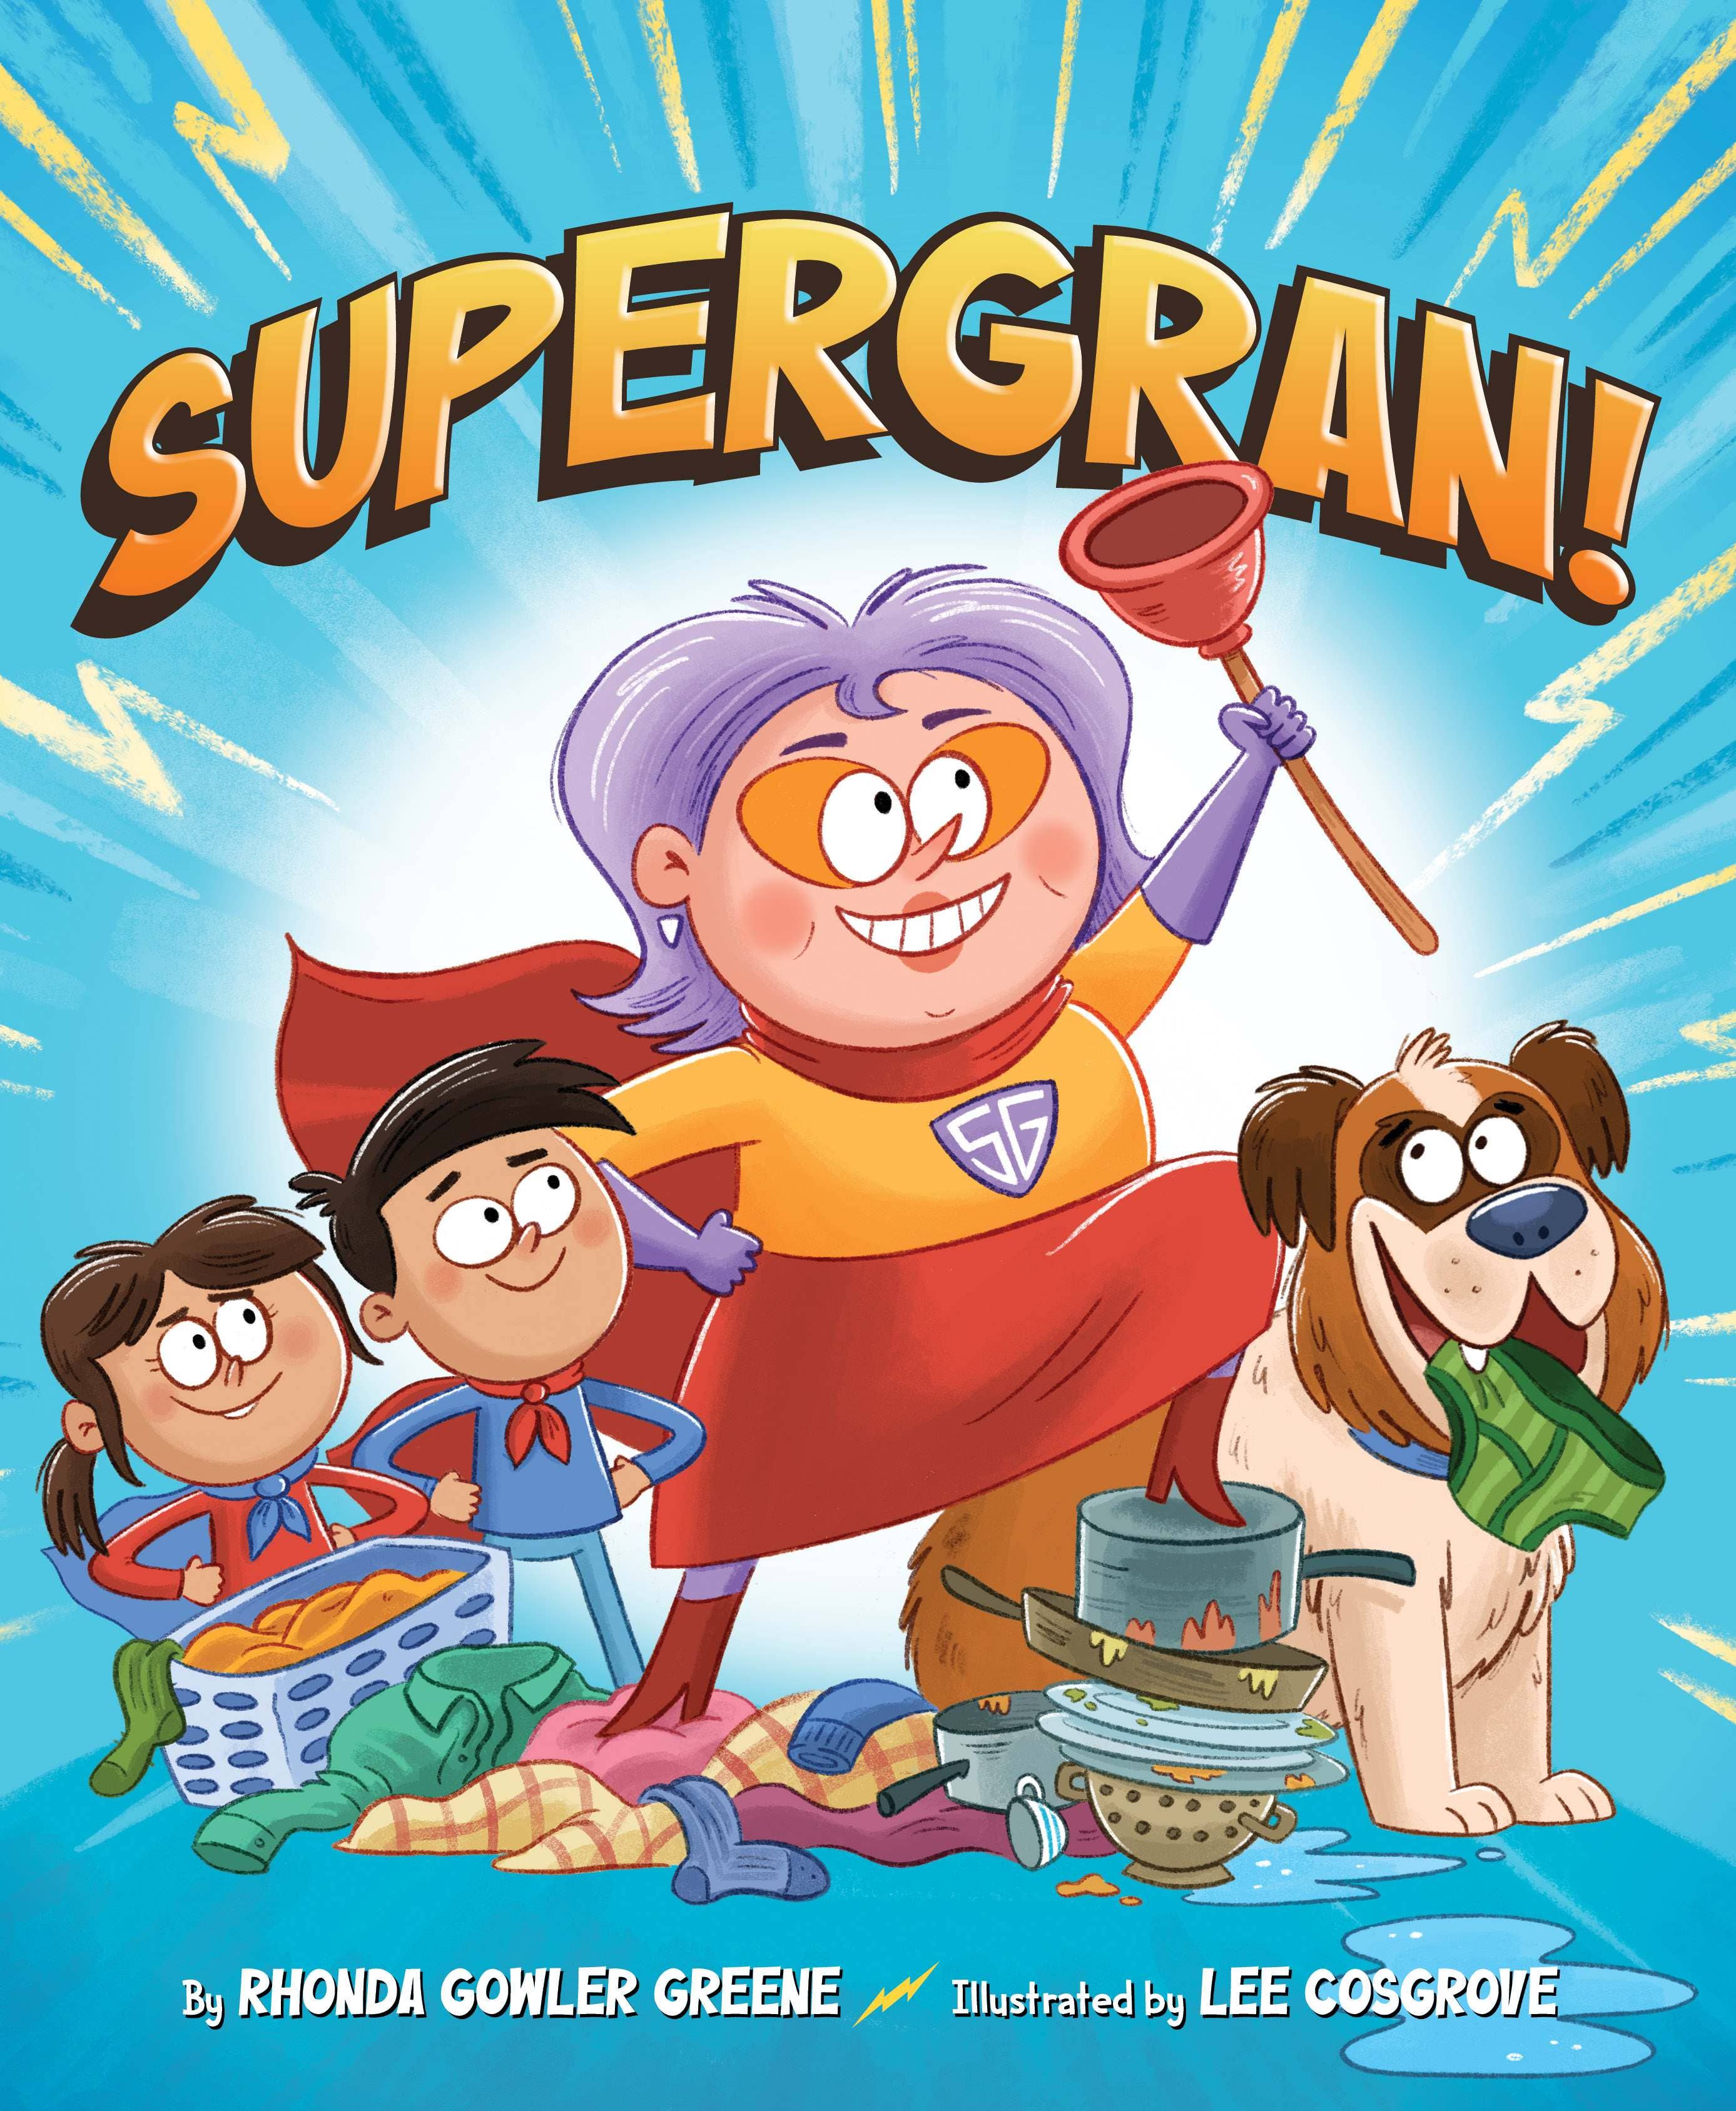 Supergran! A Hardcover Childrens Book where grandma comes to the rescue.